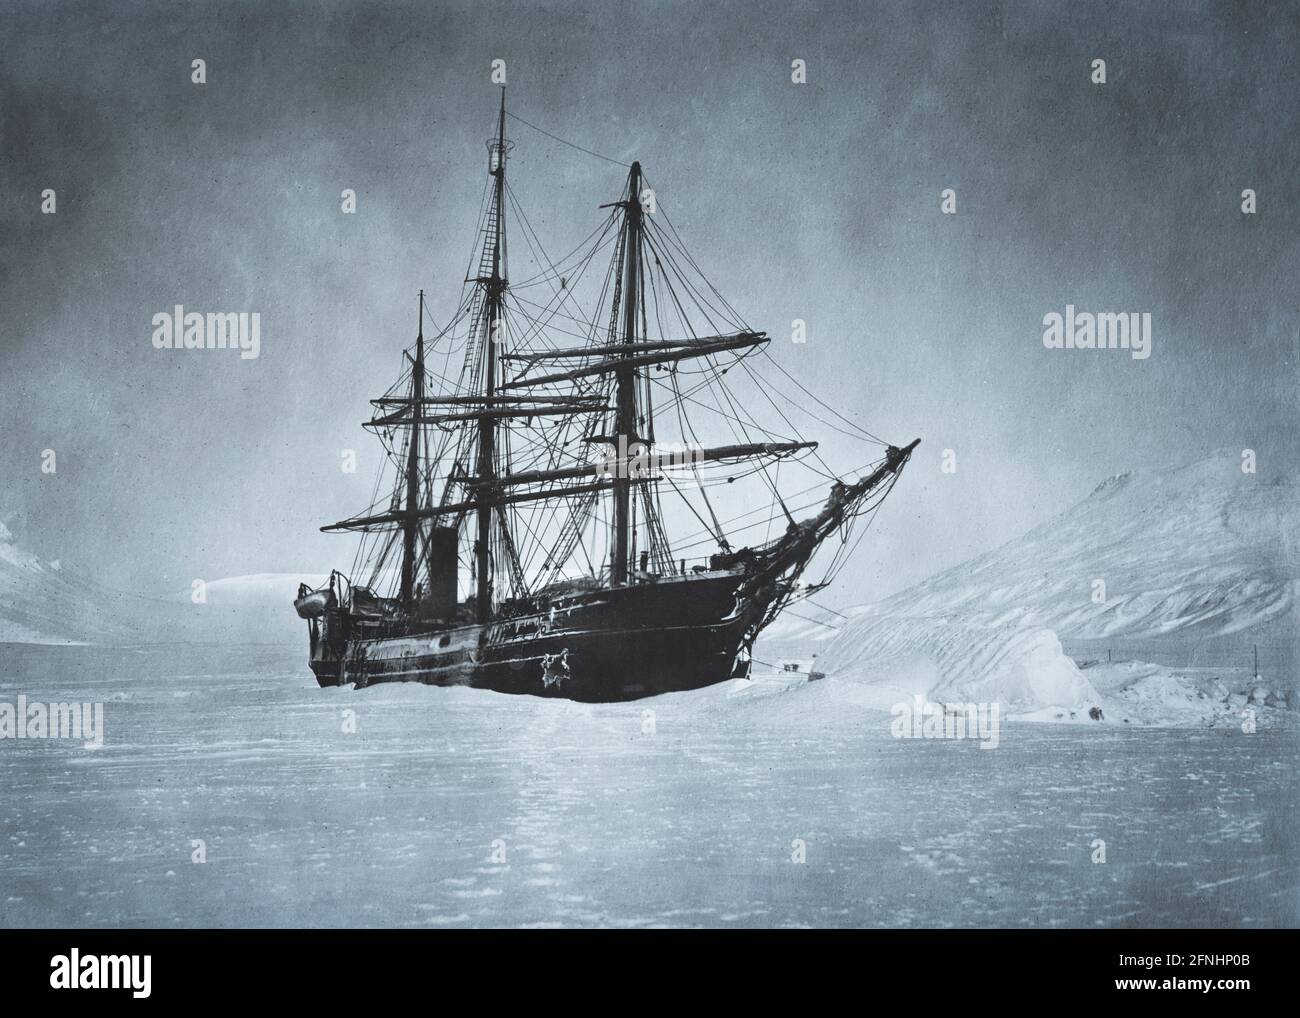 Le navire à vapeur à trois mâts America, navire-amiral de l'expédition polaire Baldwin-Ziegler de 1901 à 1902. L'objectif de l'expédition, qui a échoué, était d'atteindre le pôle Nord depuis l'archipel Franz Josef dans l'océan Arctique Banque D'Images